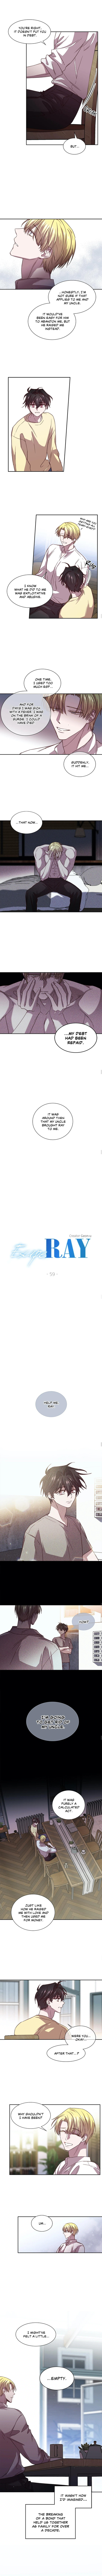 Escape, Ray - Page 2